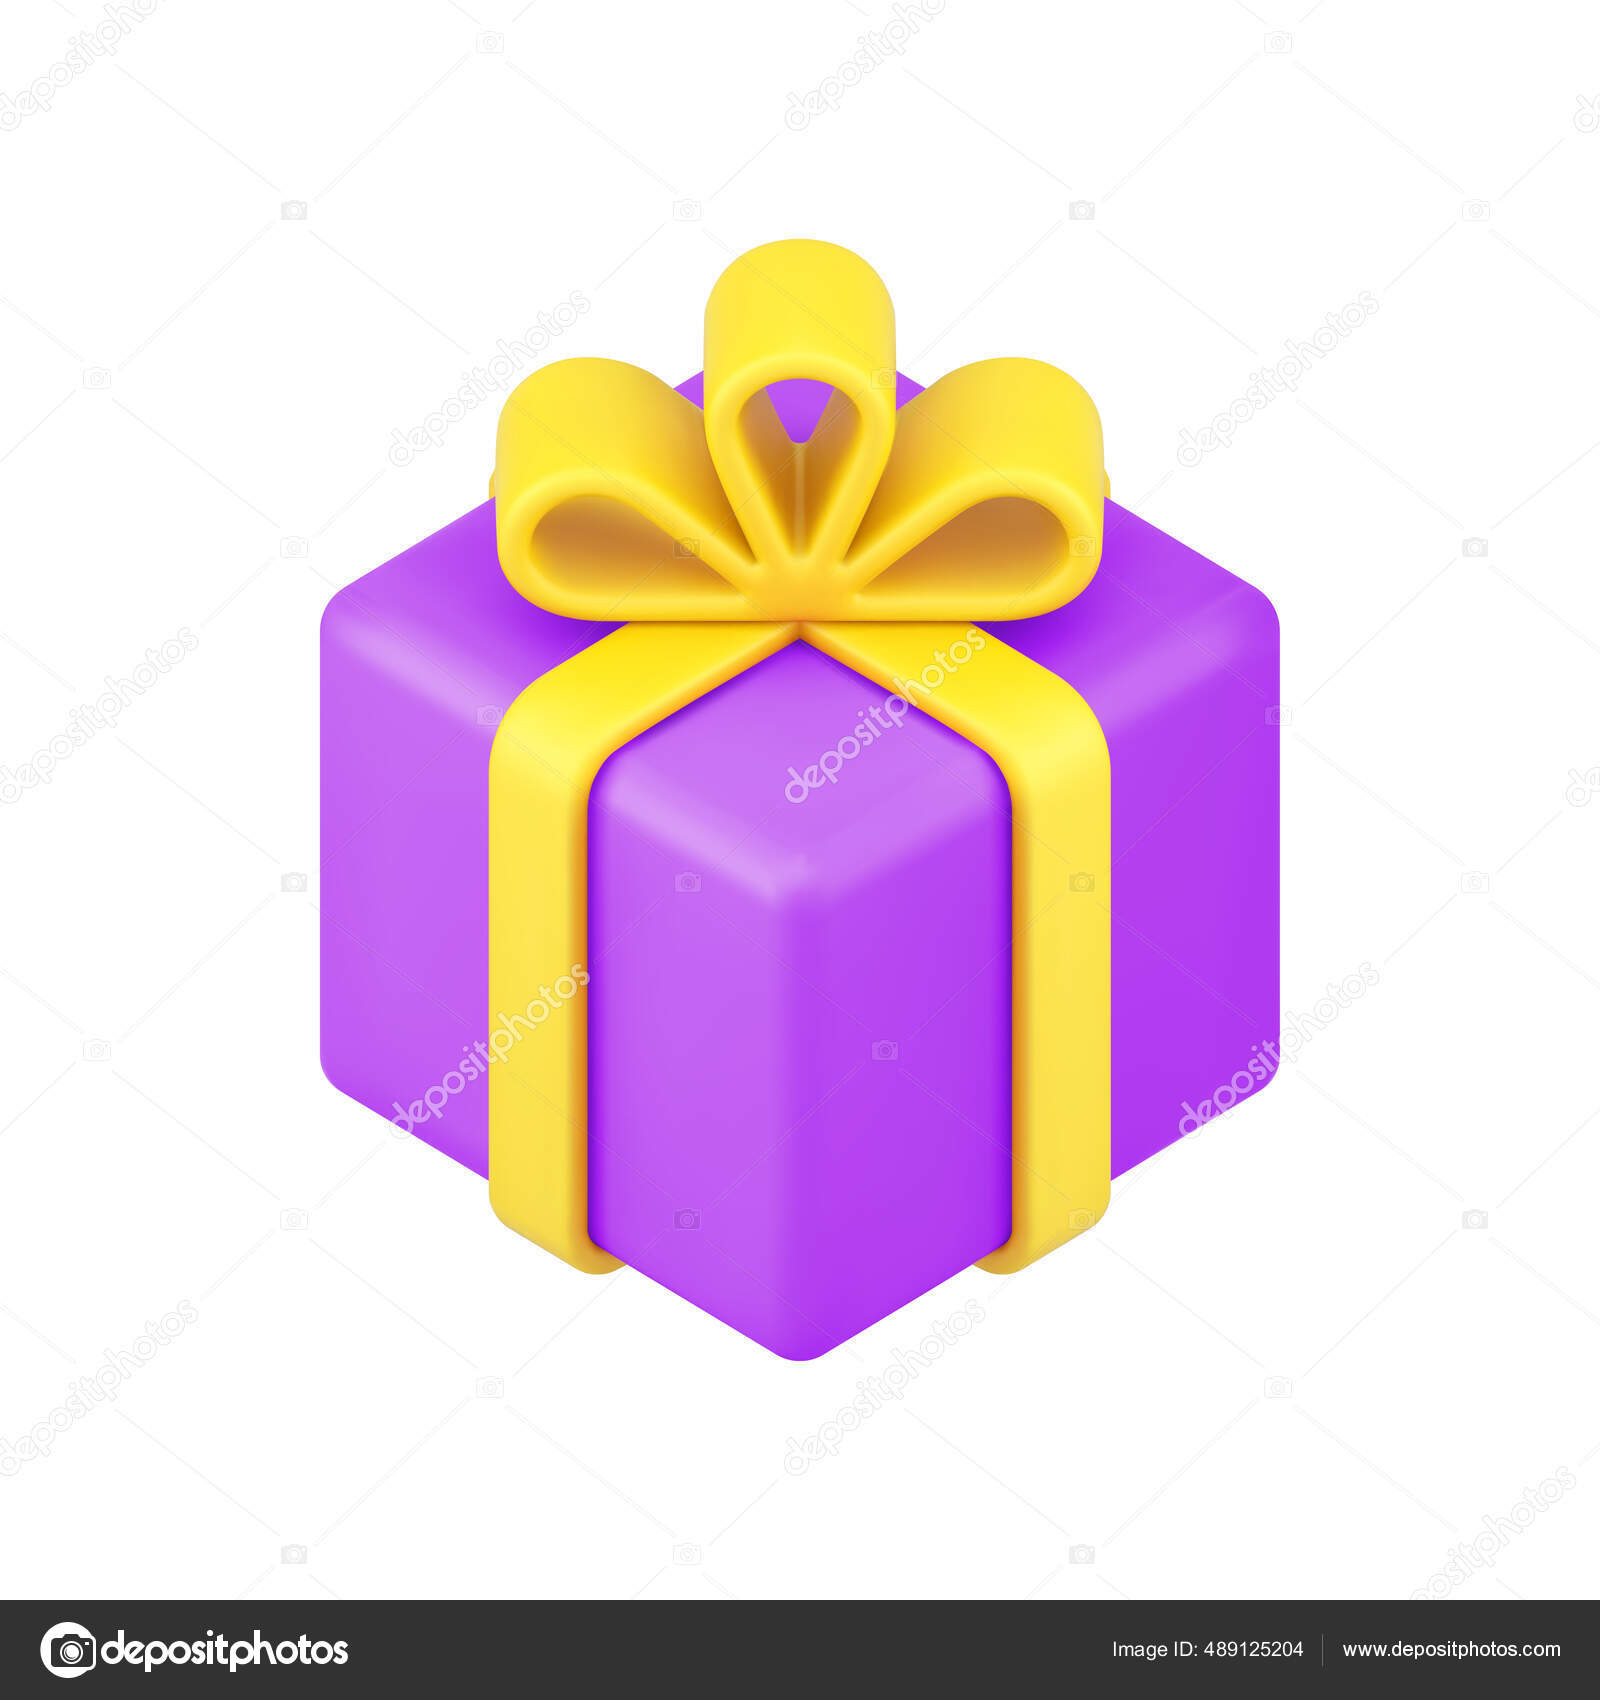 Caja de regalo 3d sobre fondo blanco aislado. cumpleaños, celebración,  embalaje 3d.